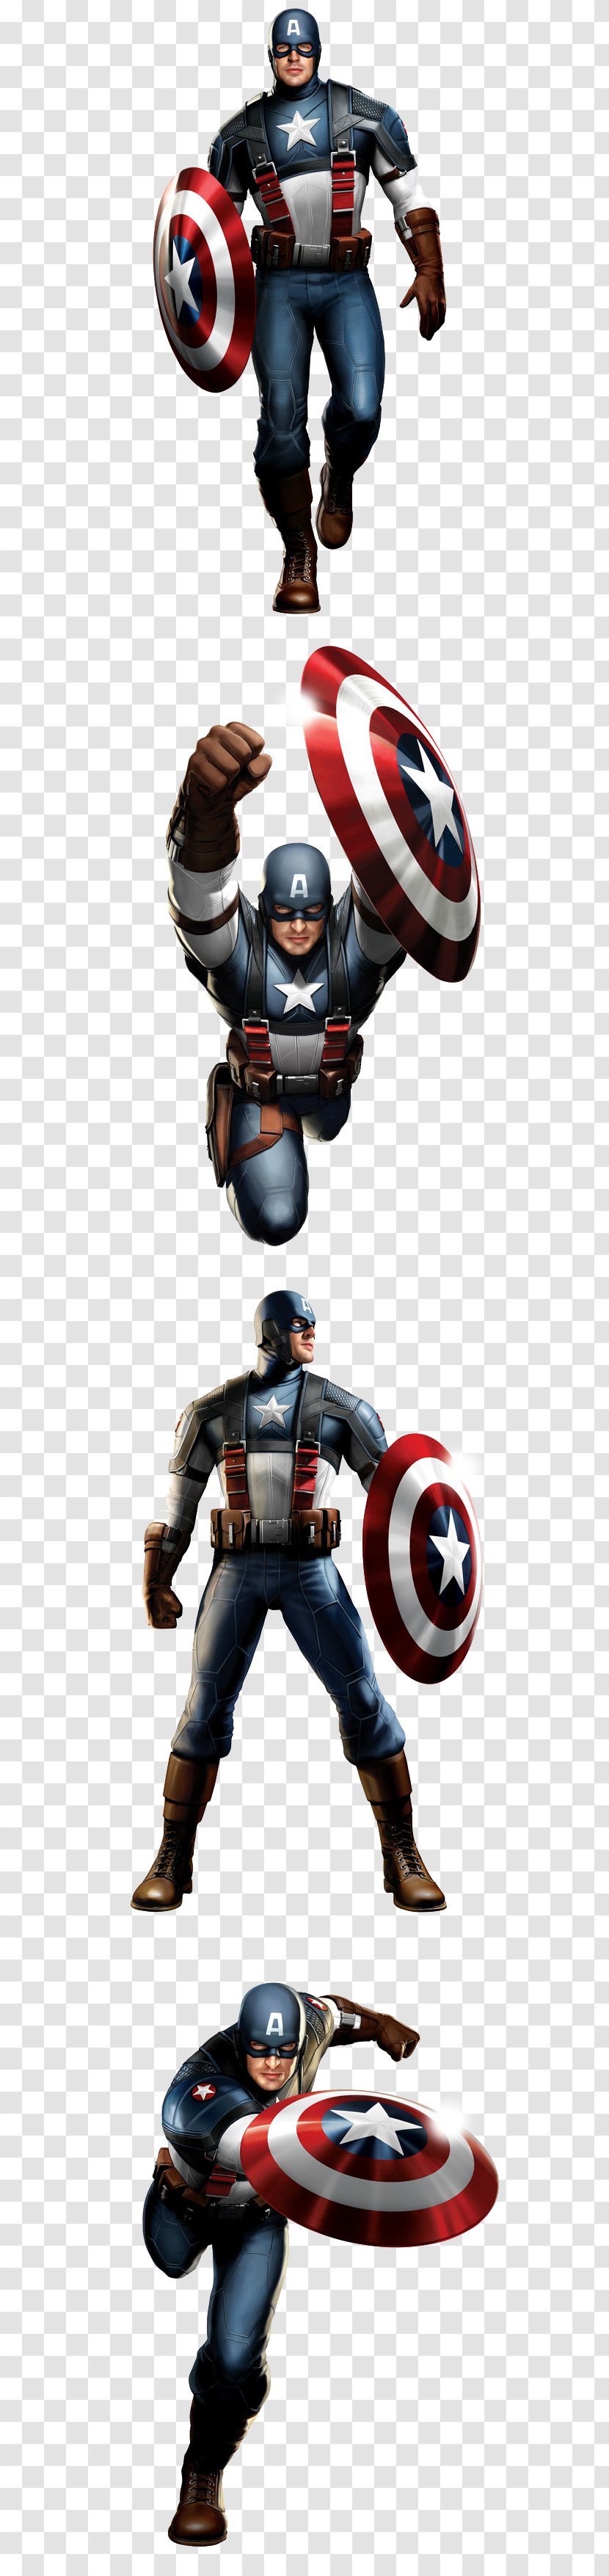 Captain America Thor Iron Man Hulk Superhero - Comics - Chris Evans Transparent PNG